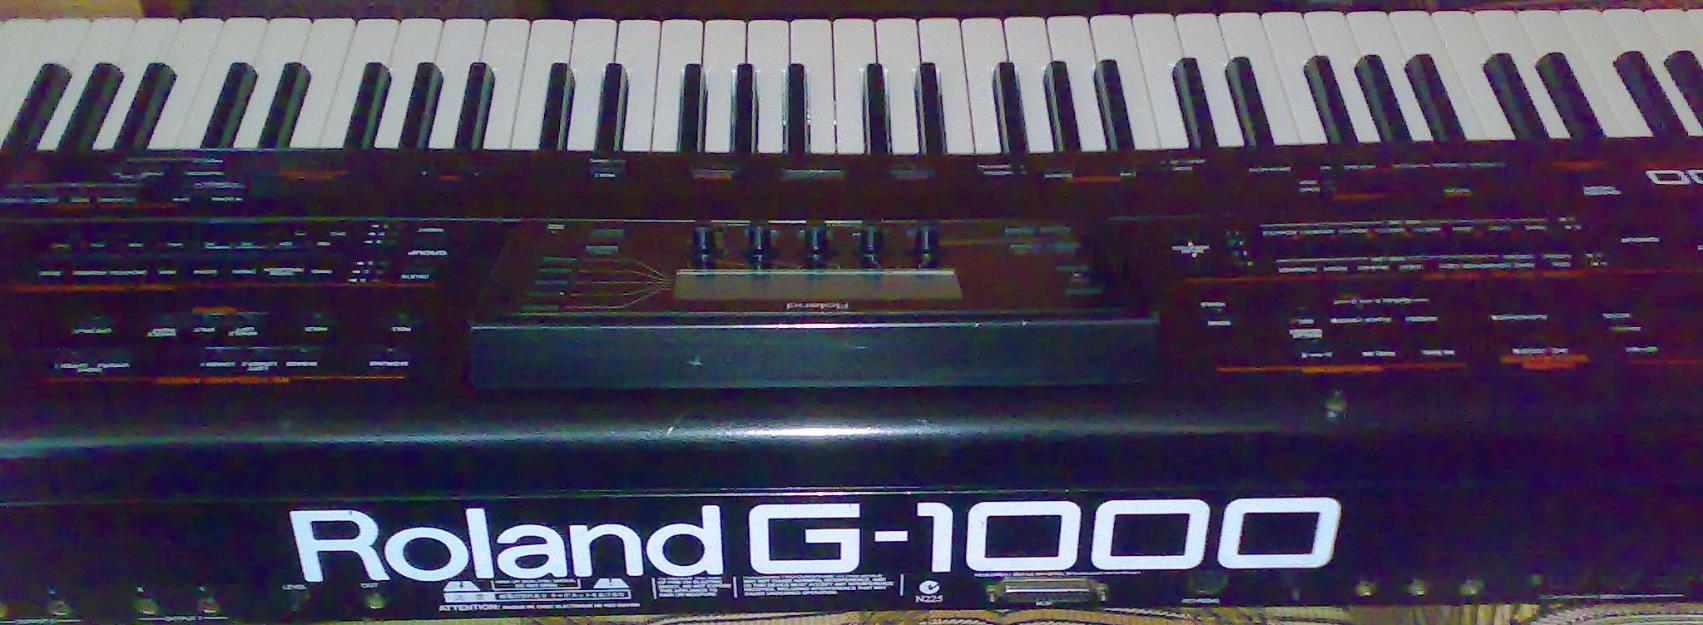 Teclado Roland G-1000